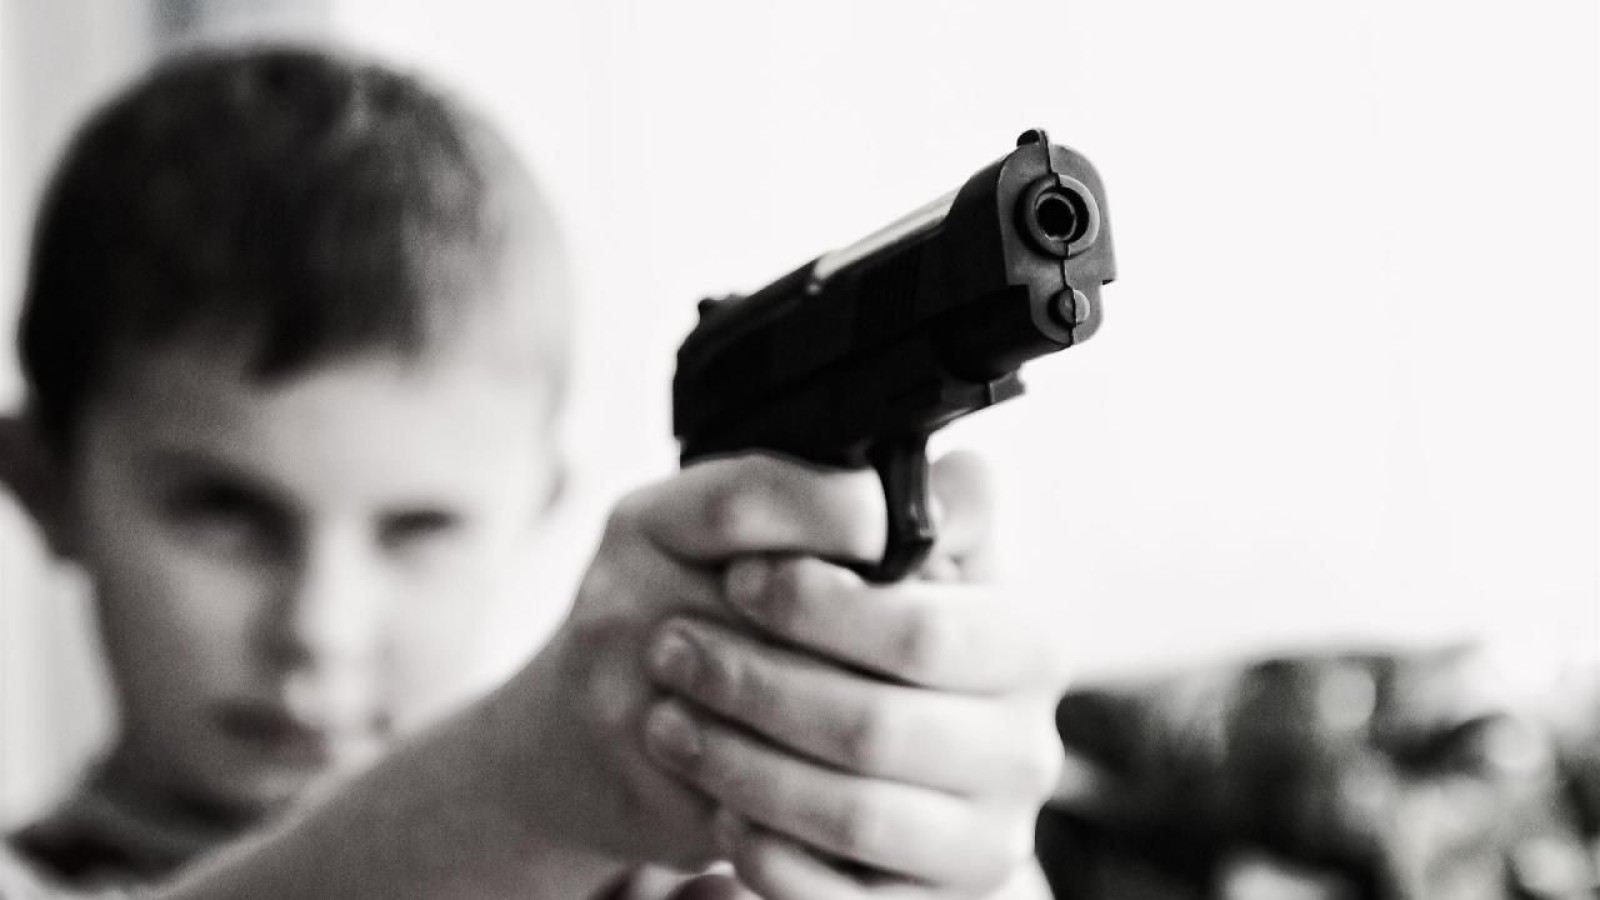 Silahla oynayan çocuk, kendini vurdu